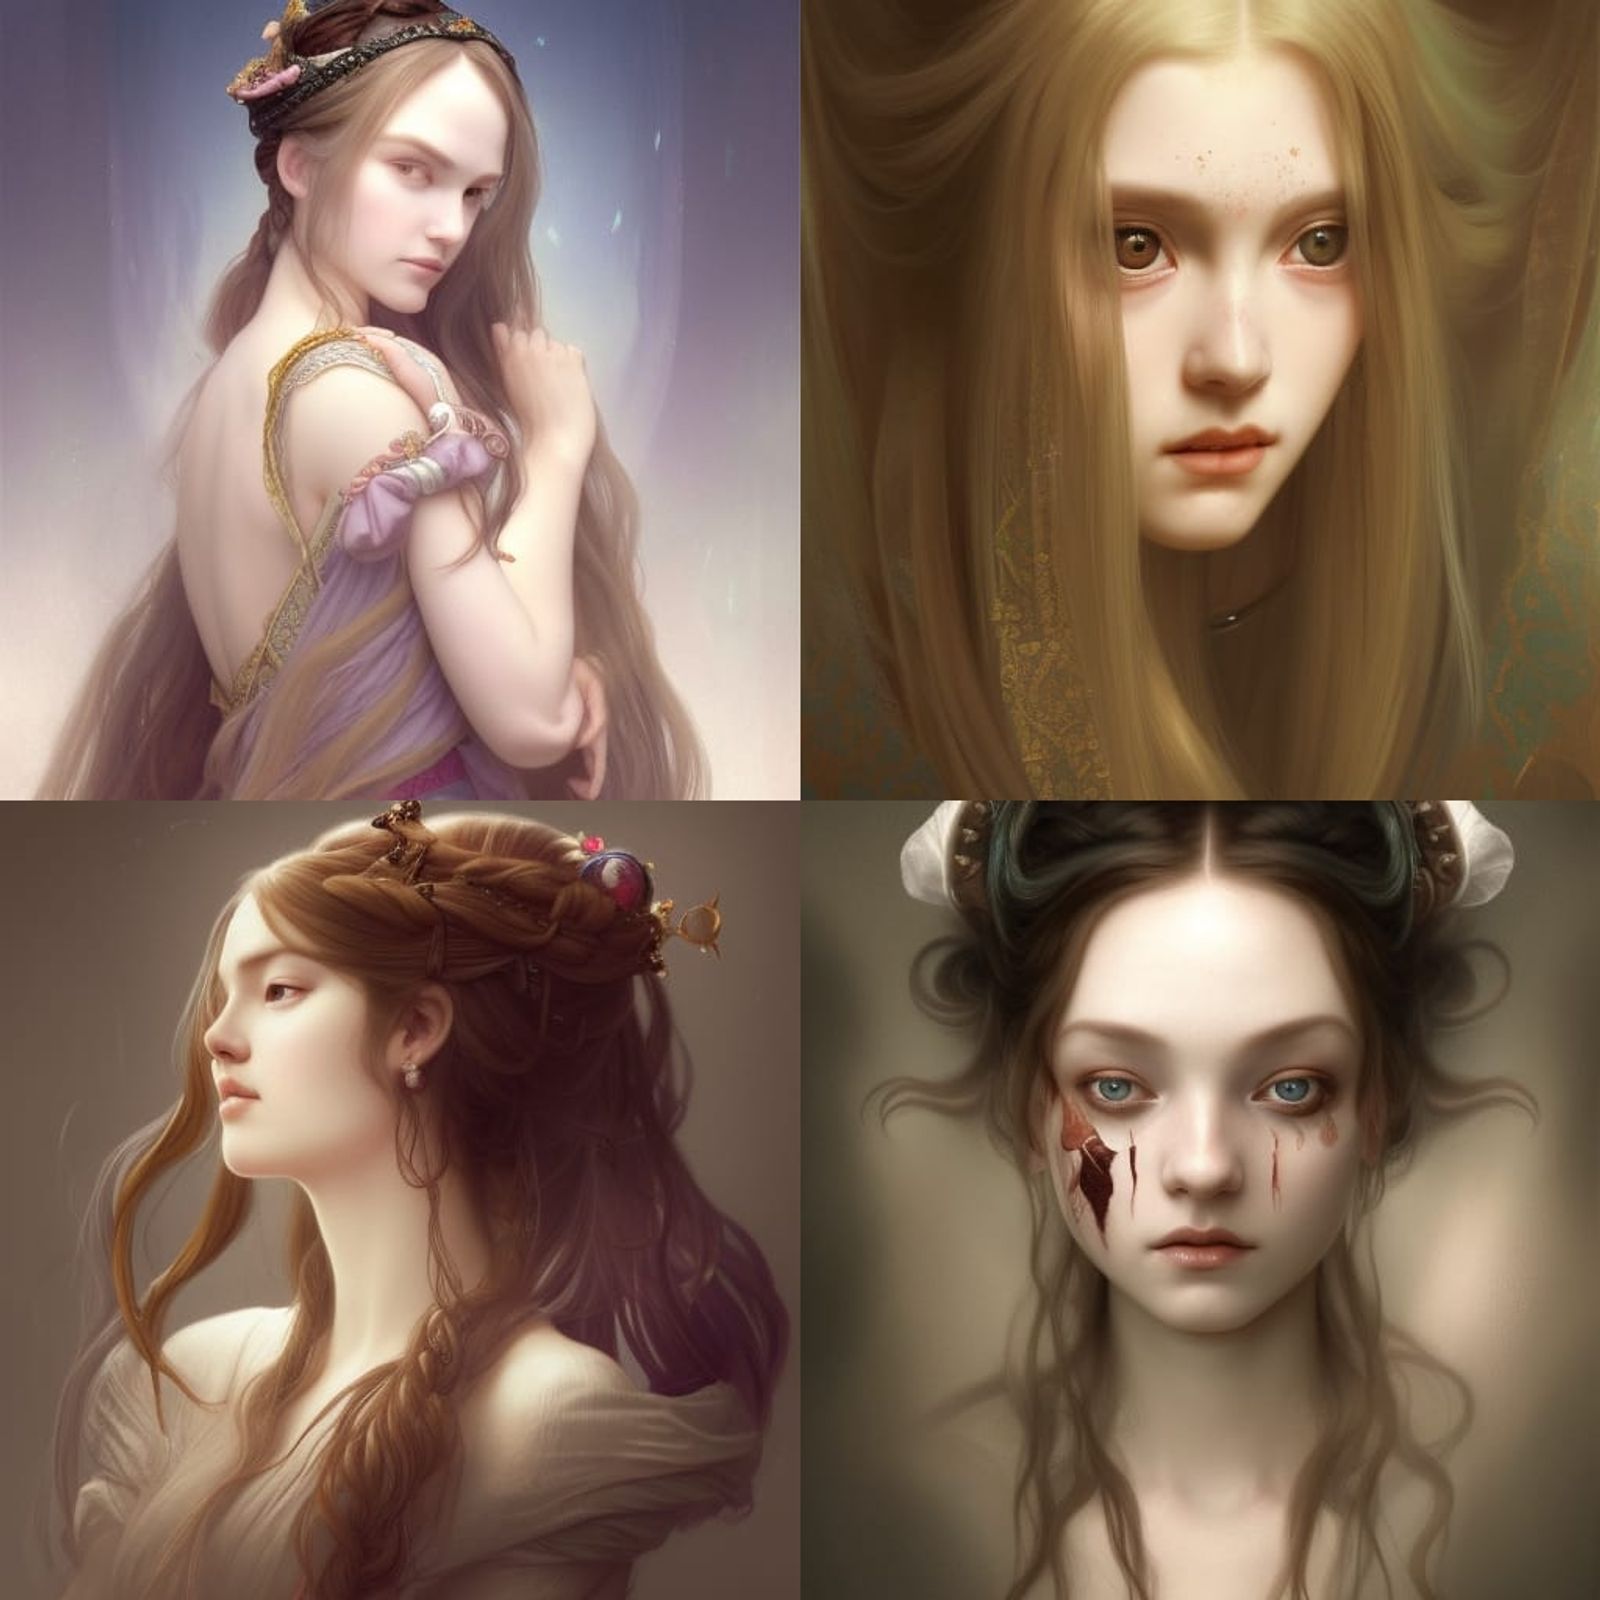 medieval hairstyles princess